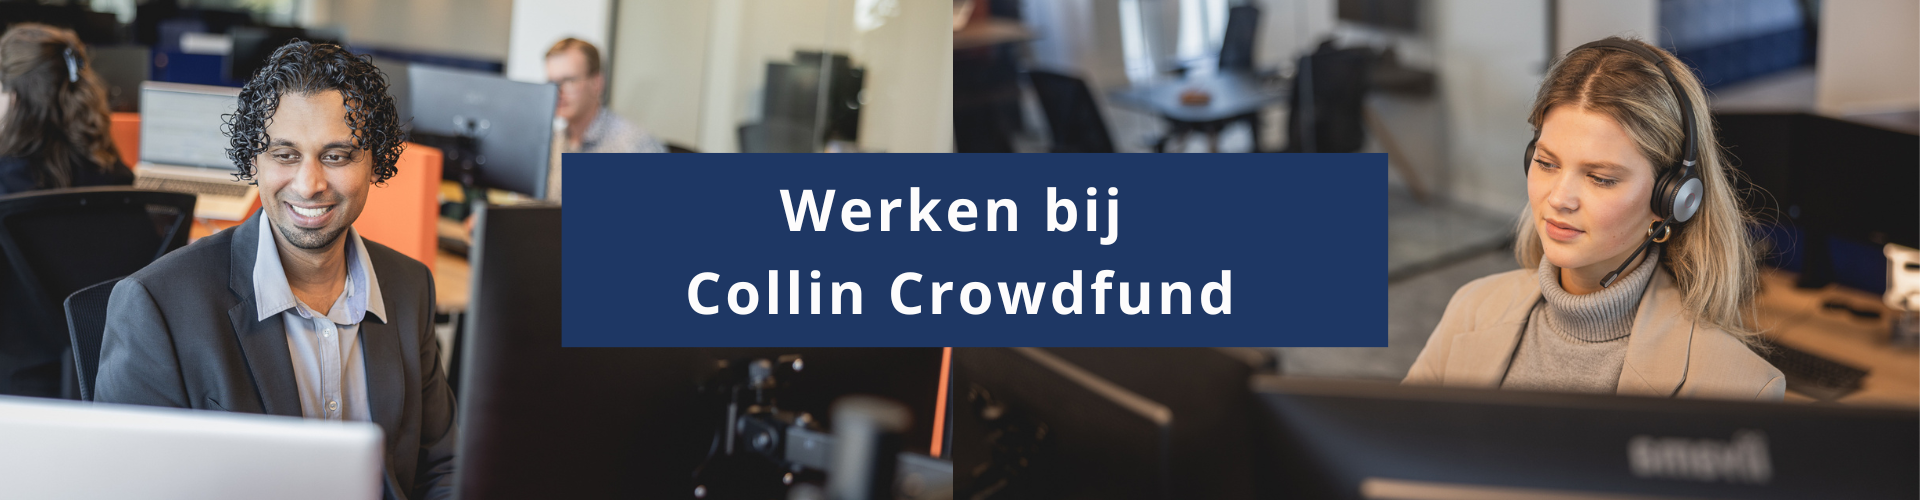 Werken bij Collin Crowdfund banner